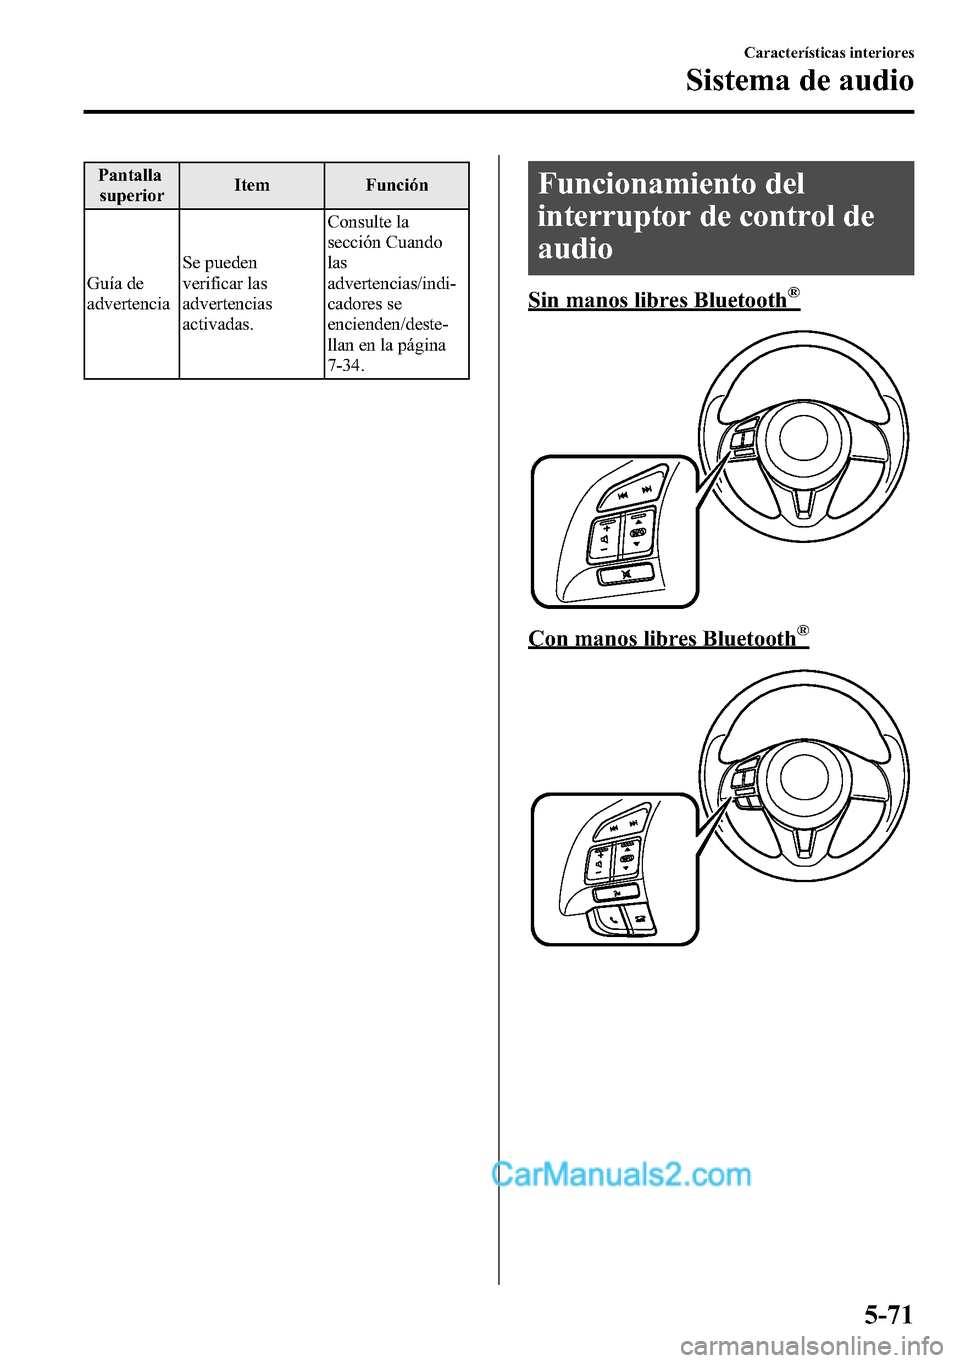 MAZDA MODEL CX-5 2016  Manual del propietario (in Spanish) Pantalla
superiorItem Función
Guía de
advertenciaSe pueden
verificar las
advertencias
activadas.Consulte la
sección Cuando
las
advertencias/indi-
cadores se
encienden/deste-
llan en la página
7-34